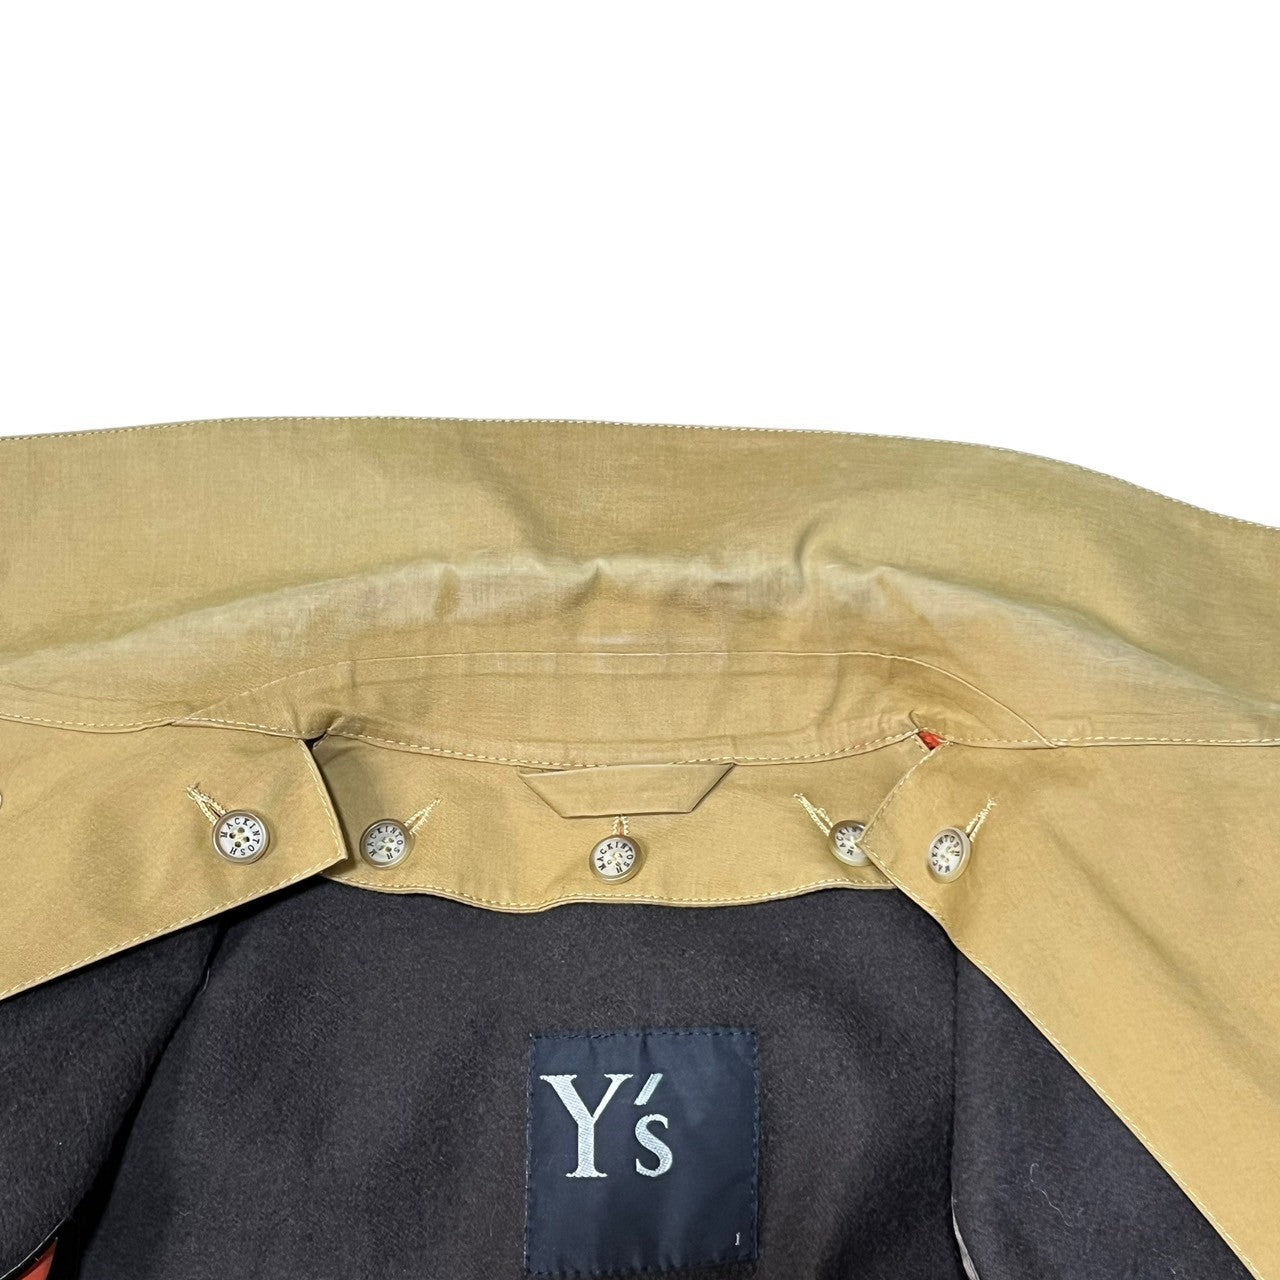 Y's × MACKINTOSH(ワイズ × マッキントッシュ) rubberized soutien collar coat coat ゴム引き ステンカラー コート YM-C91-003 SIZE 1(S) ベージュ トレンチ